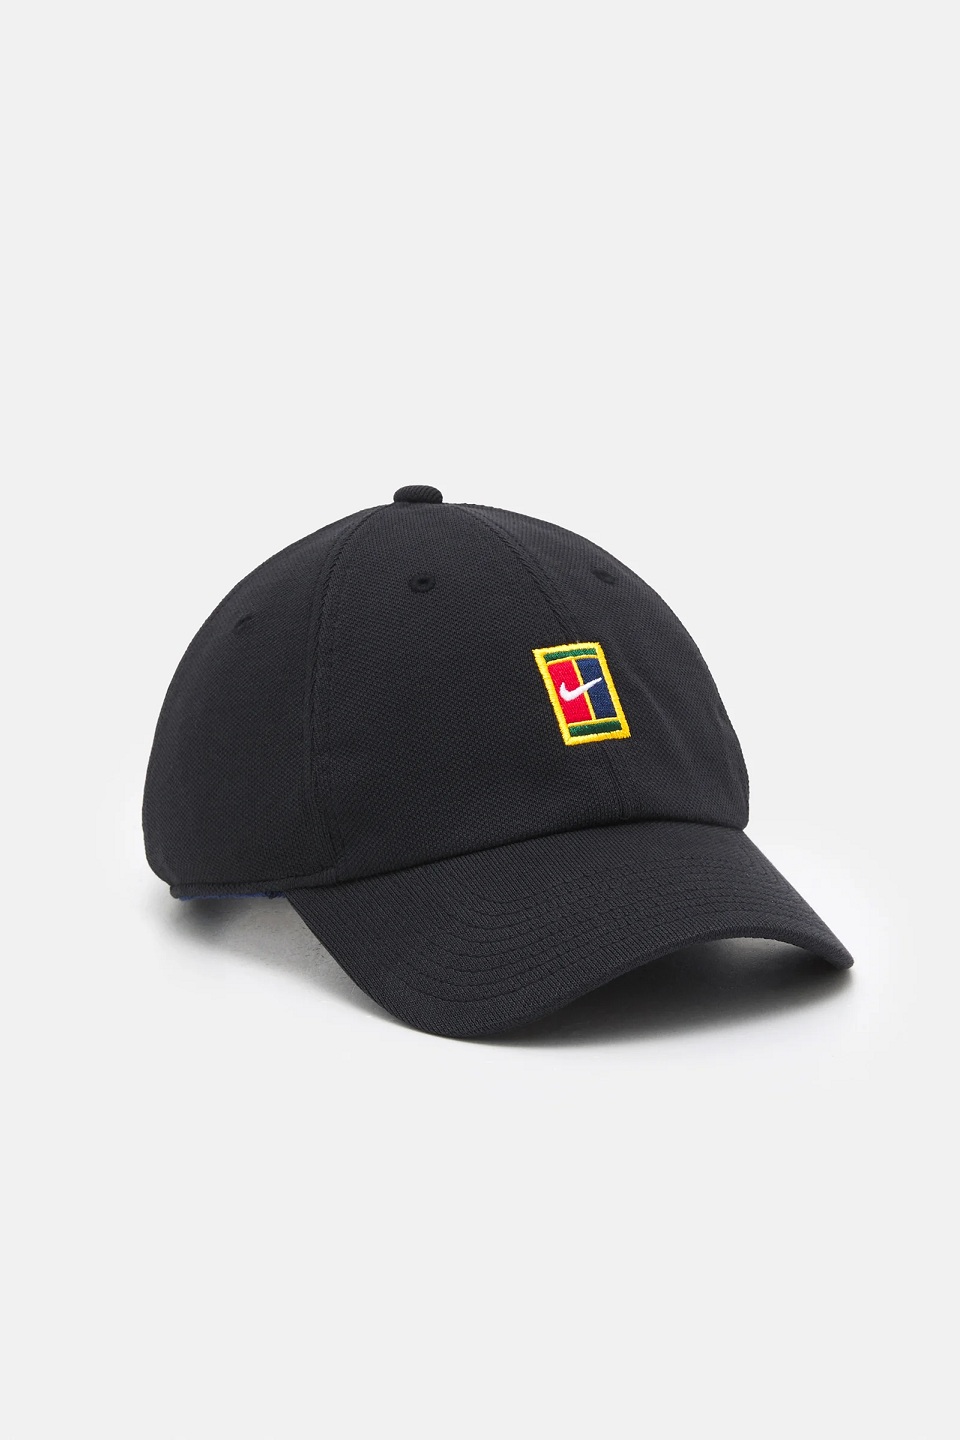 NIKE - NikeCourt Heritage Logolu Tenis Şapkası Siyah